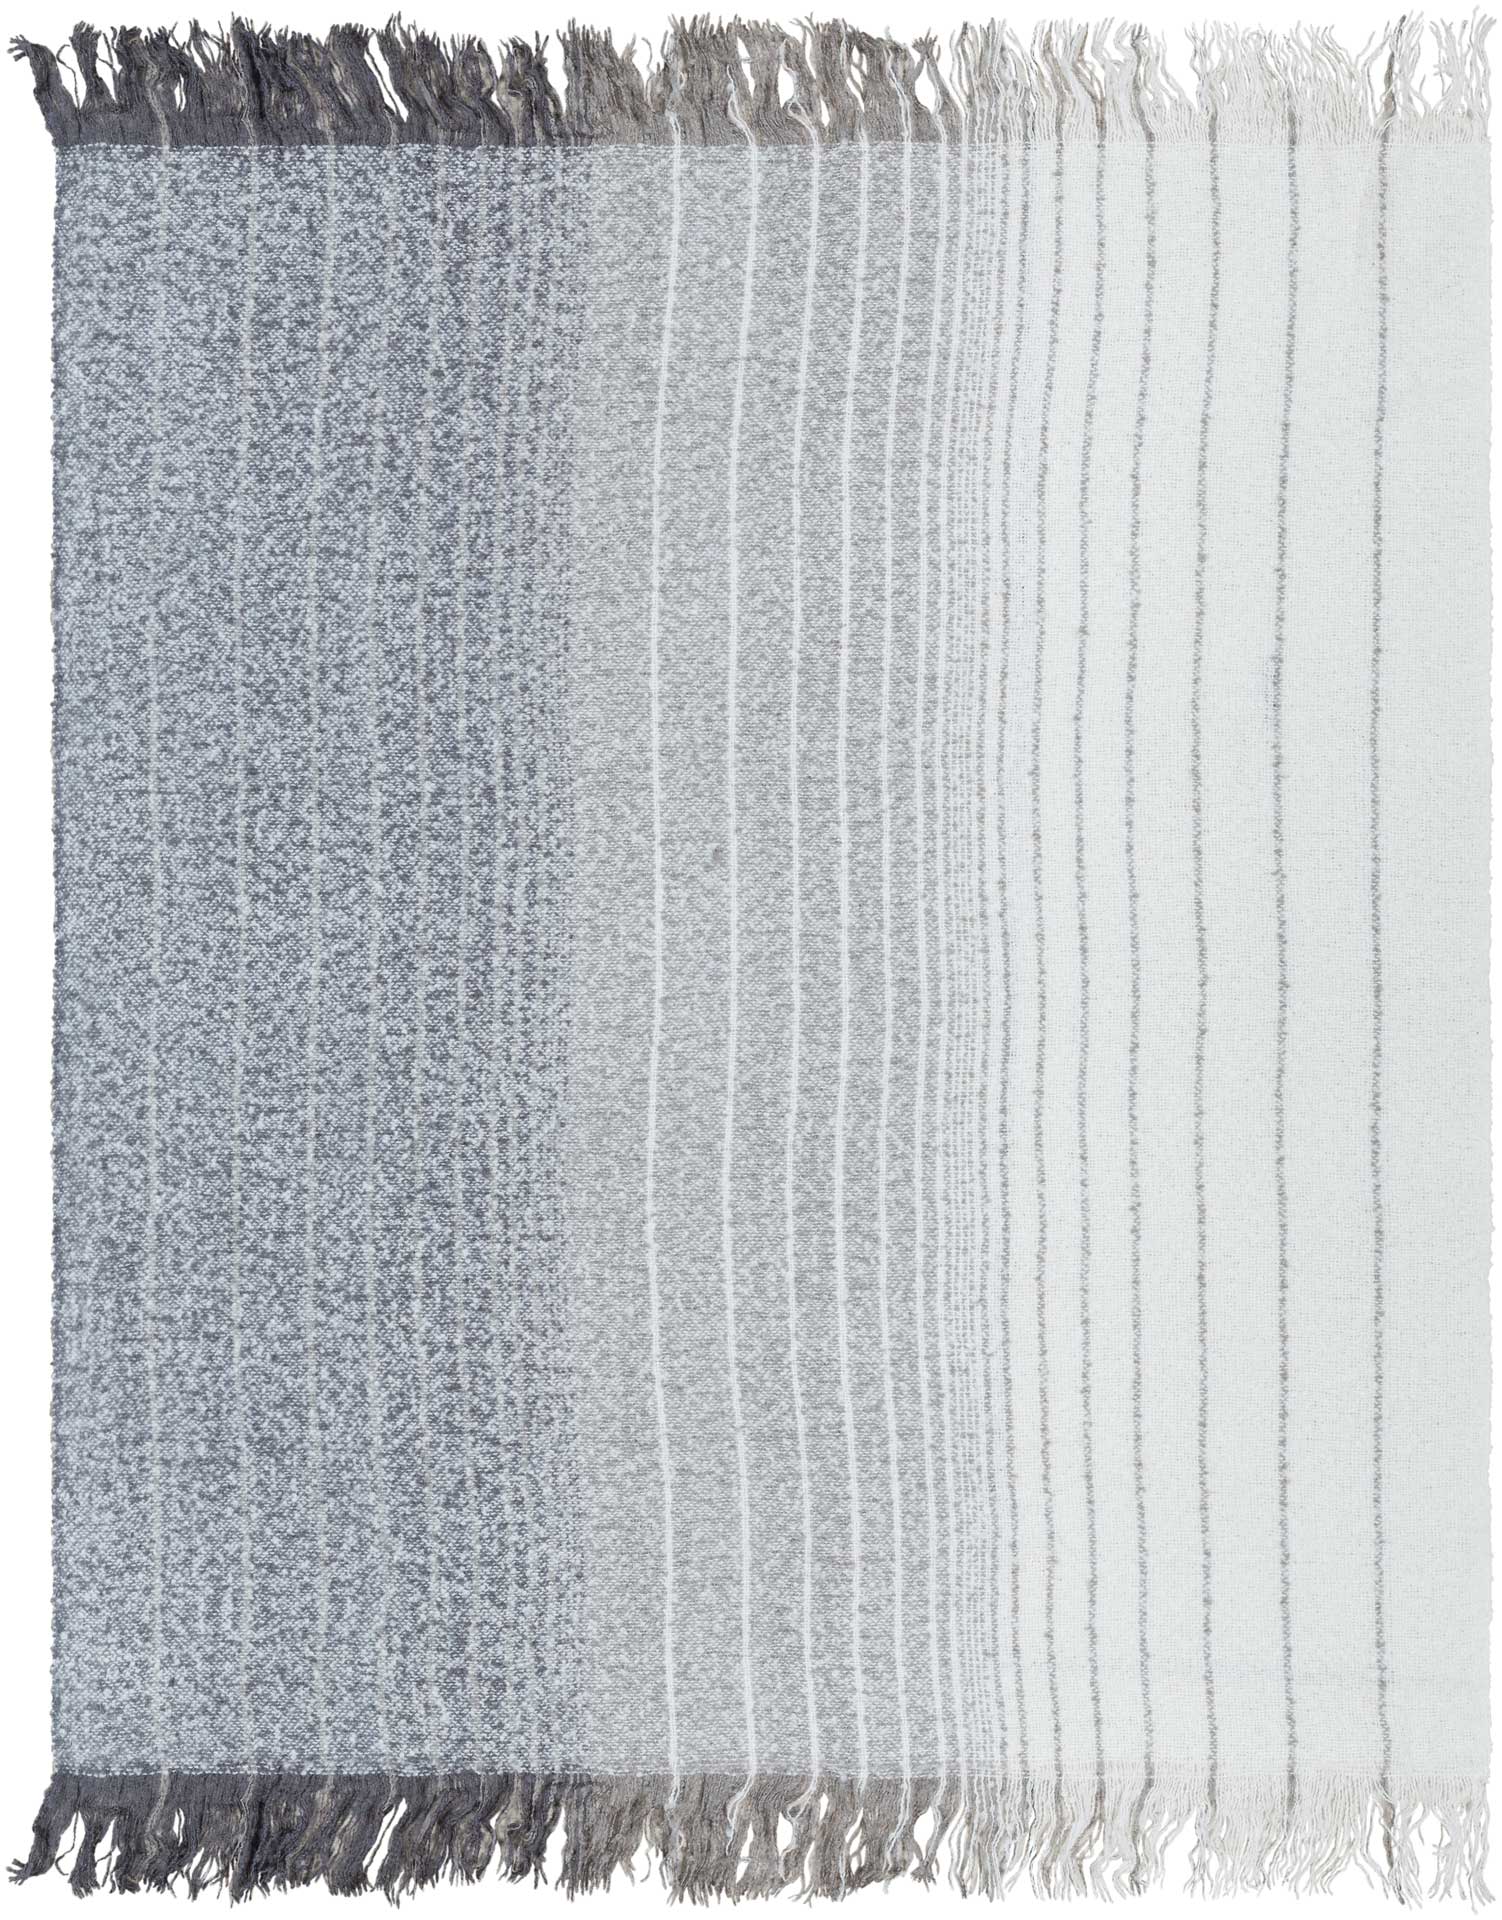 Arham Throw Medium Gray/White/Charcoal